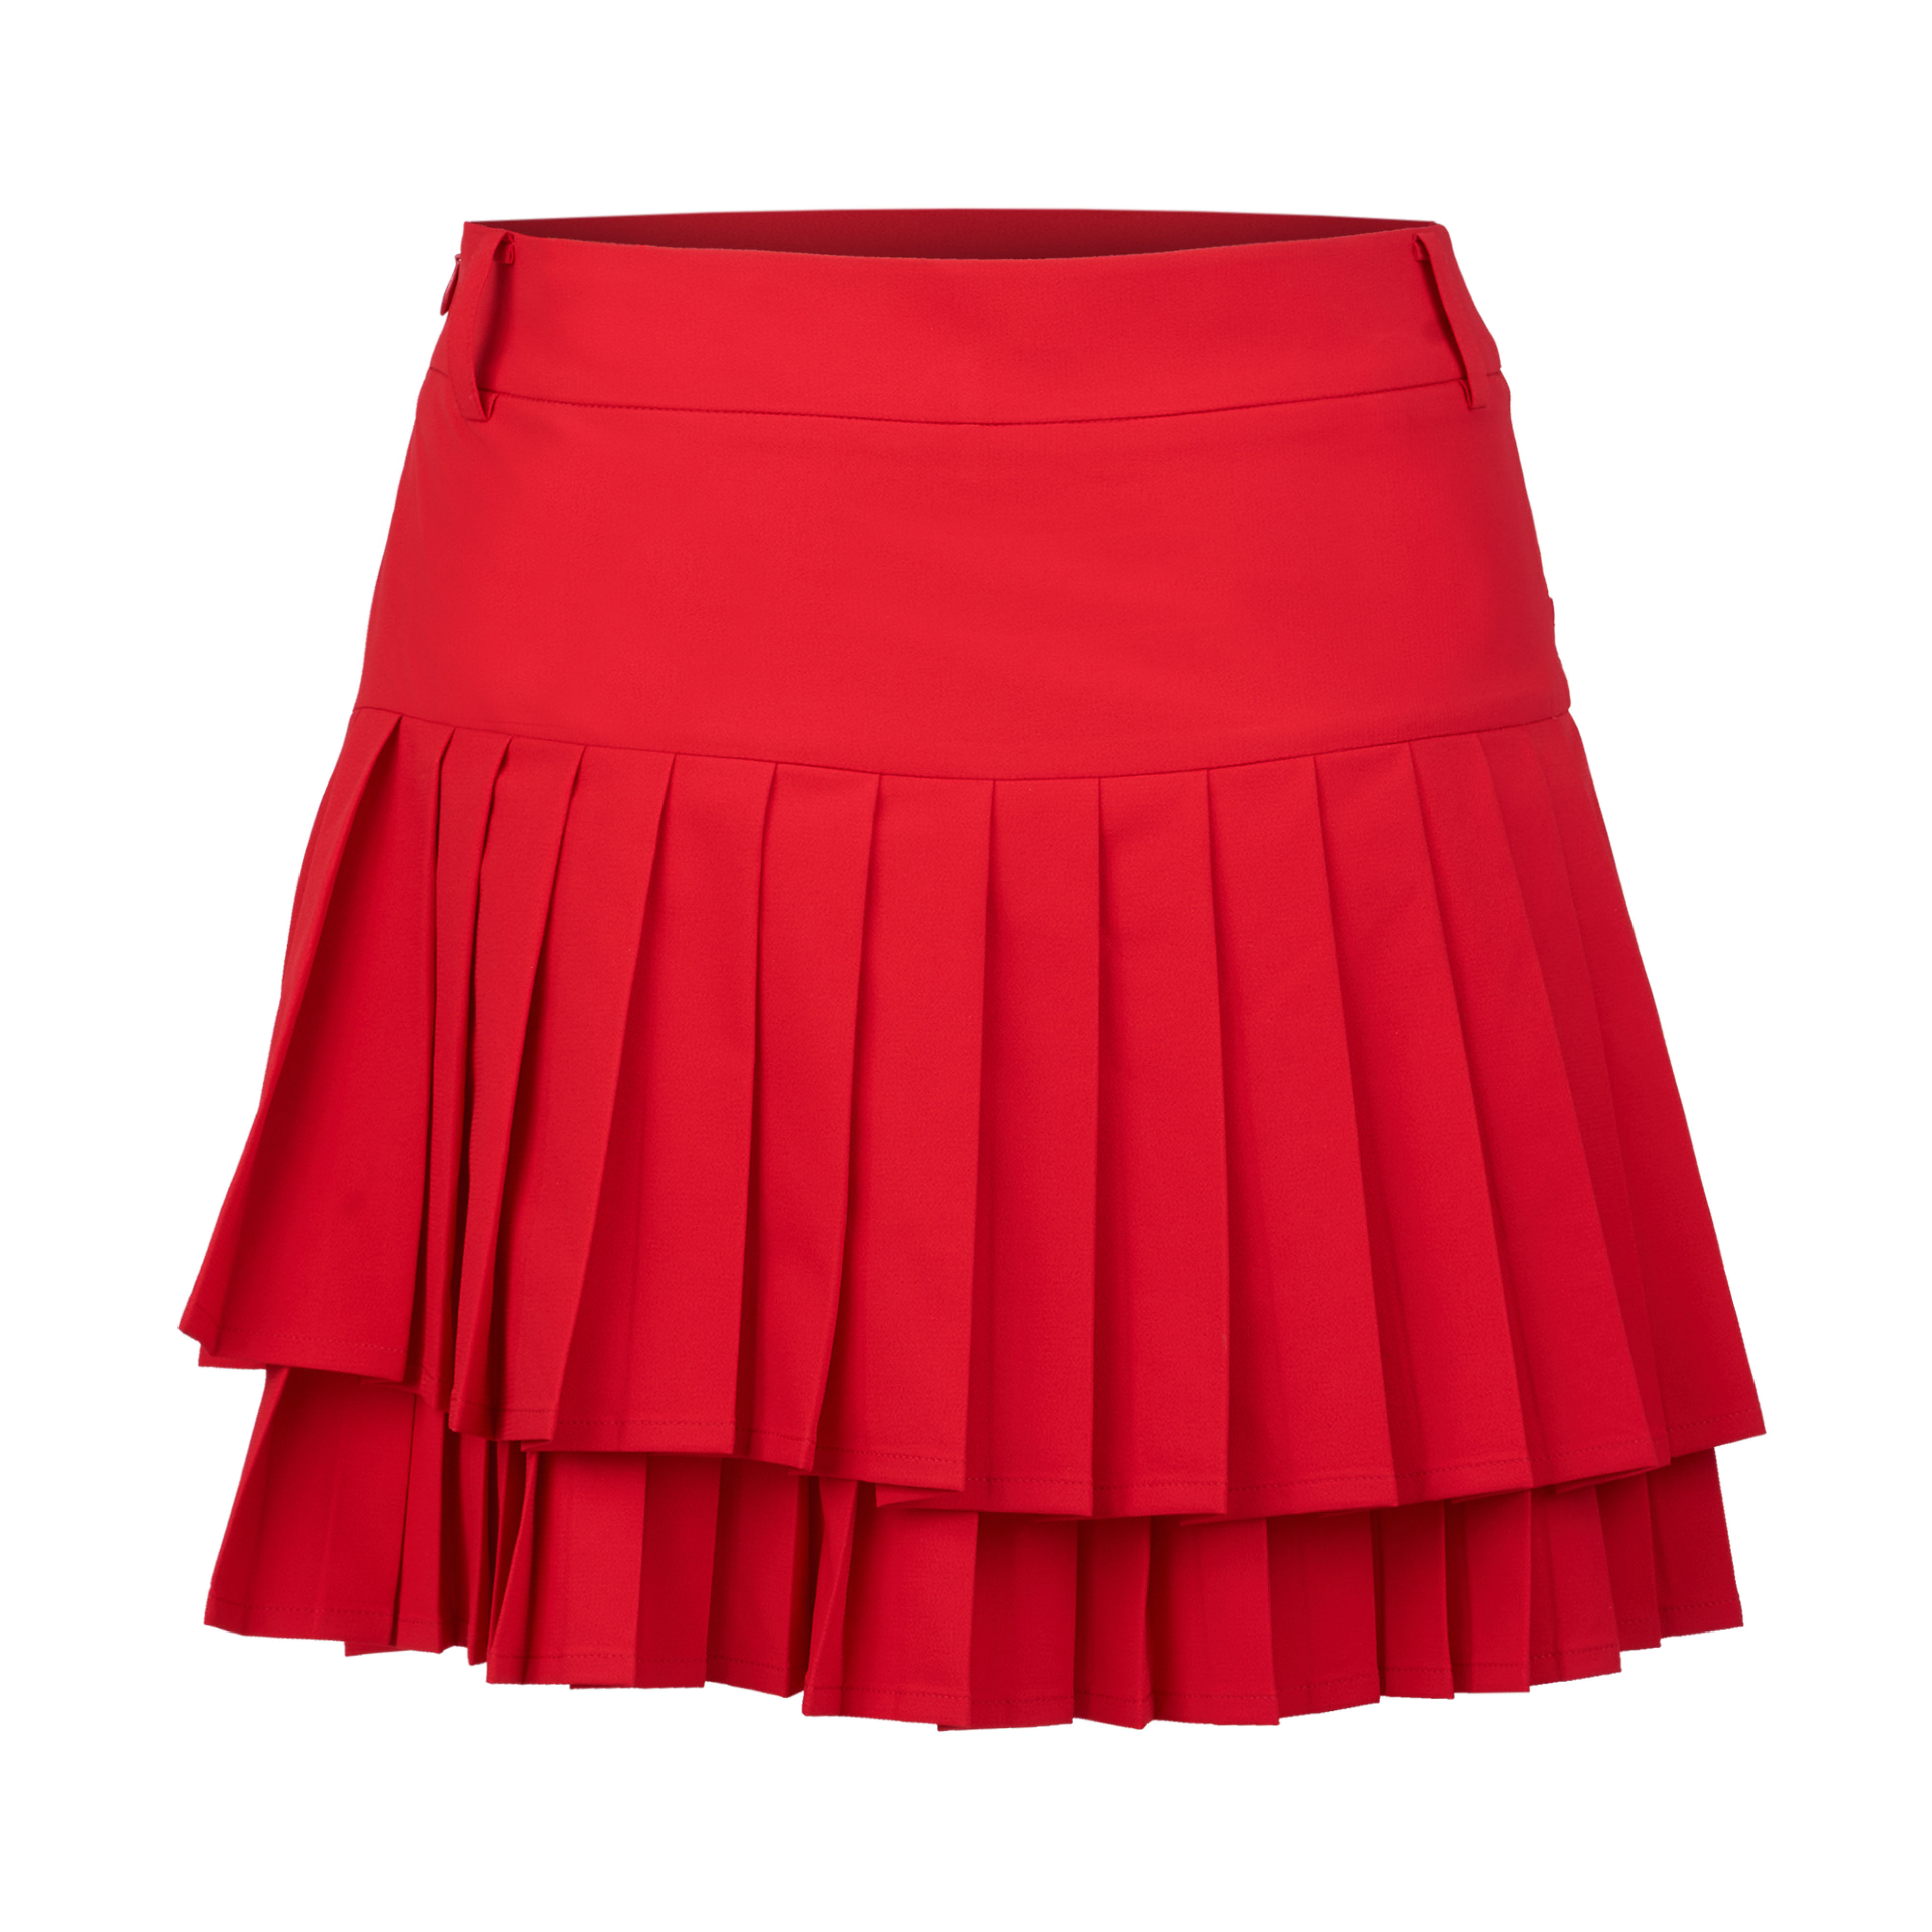 Ava skirt